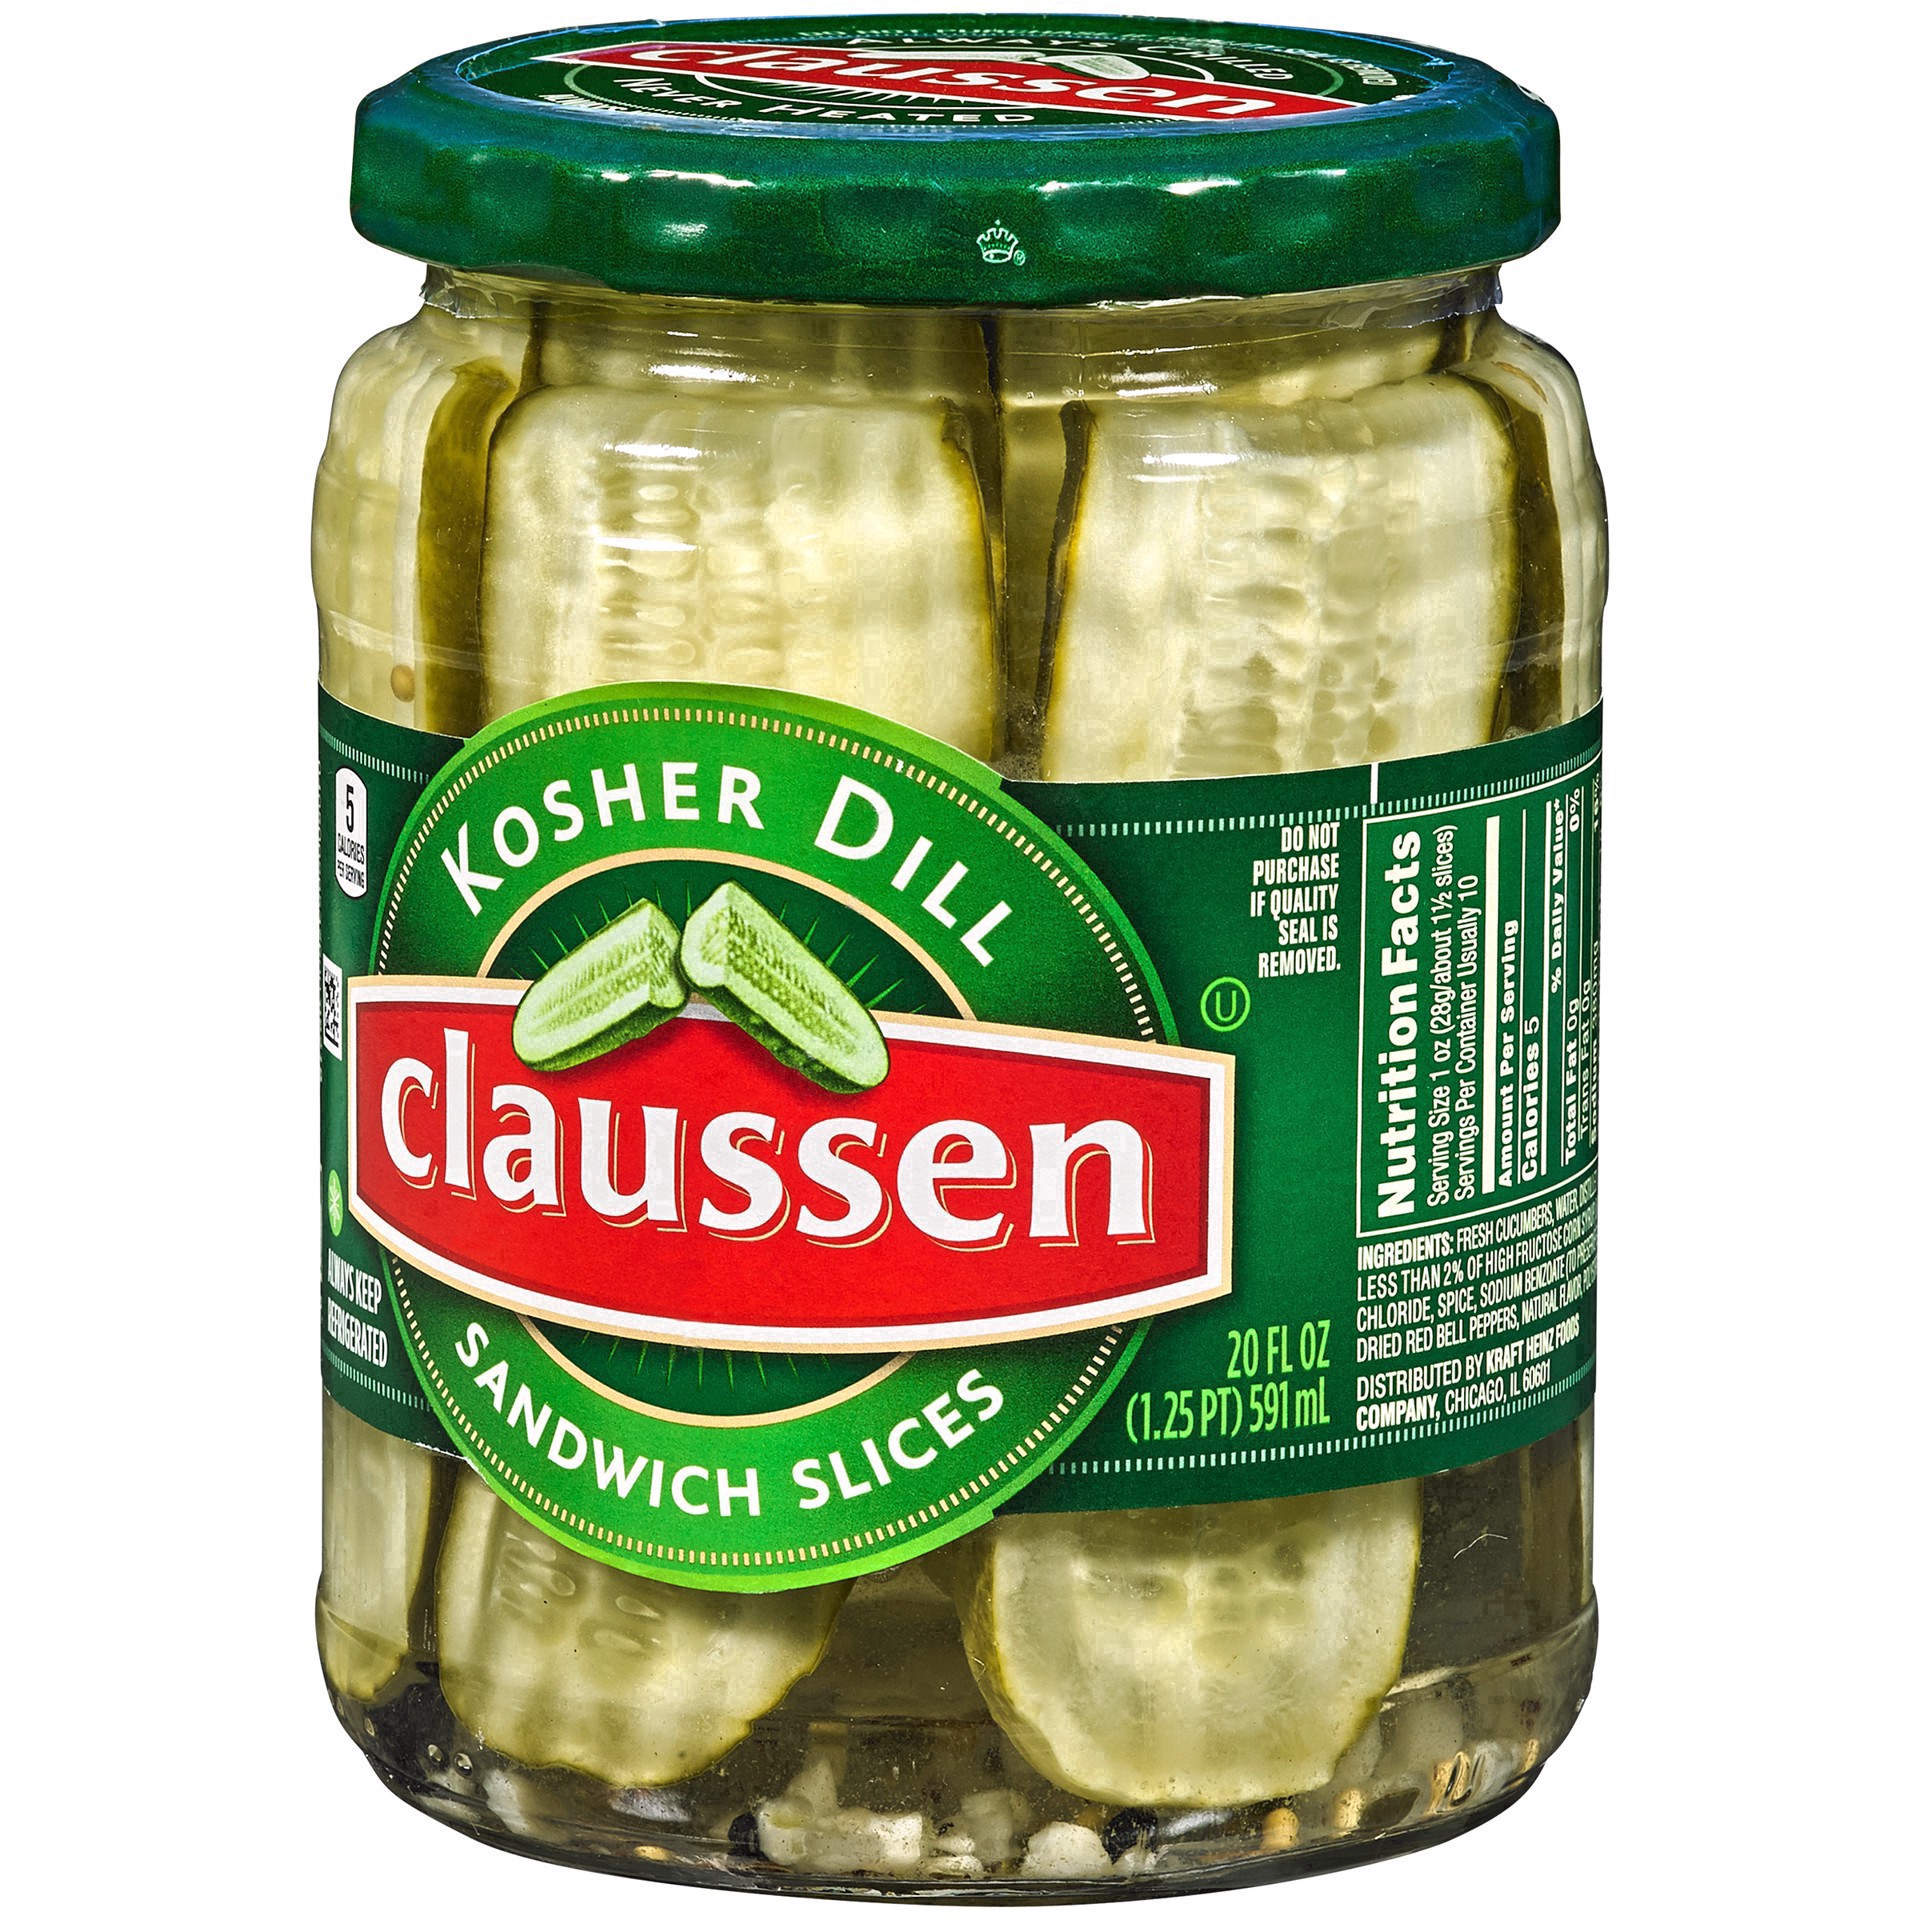 slide 65 of 144, Claussen Kosher Dill Pickle Sandwich Slices, 20 fl. oz. Jar, 20 fl oz